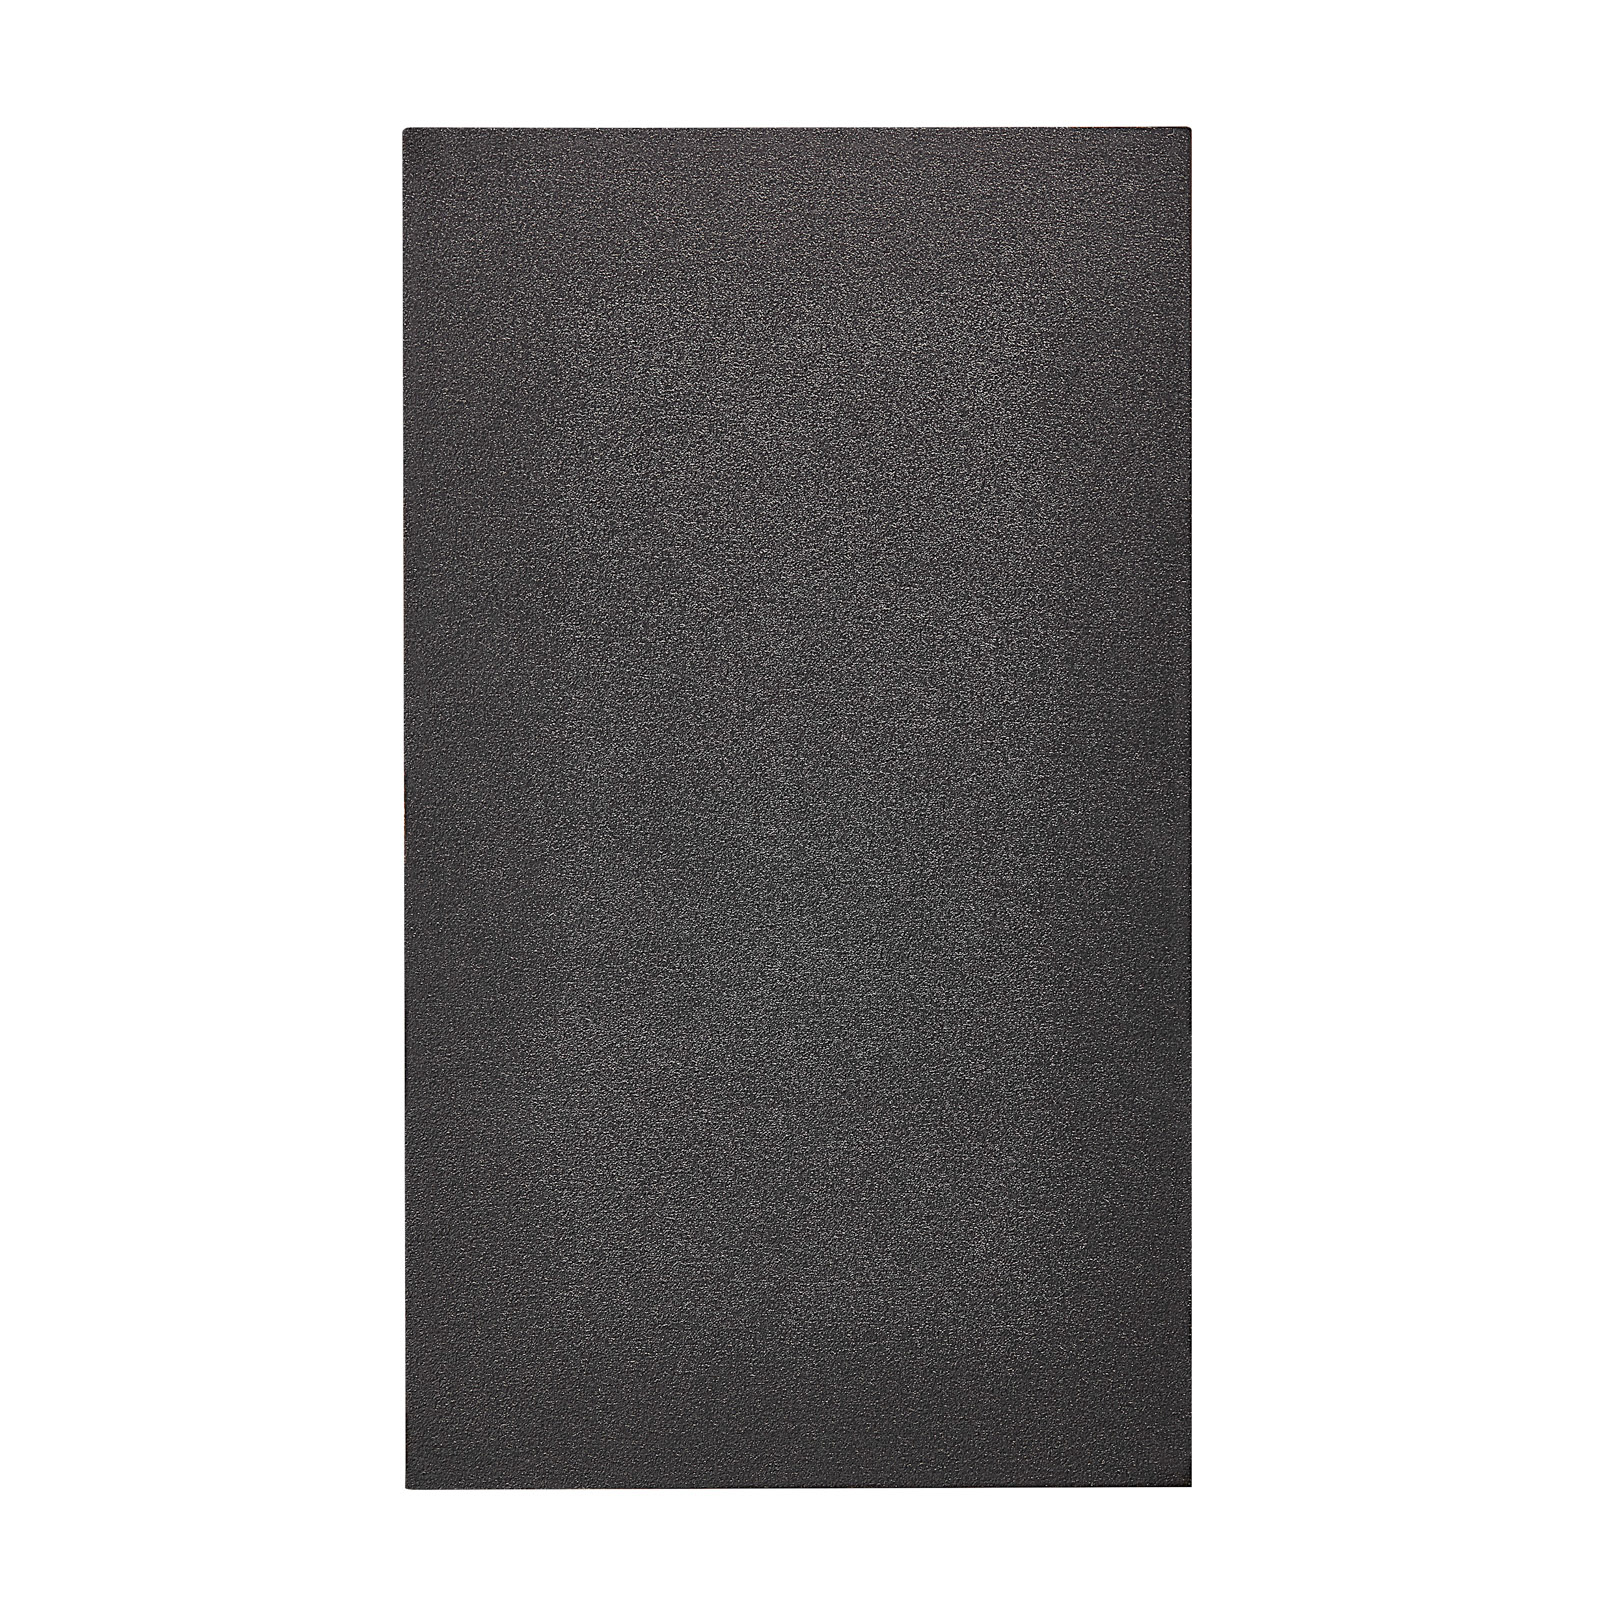 Ulkoseinävalaisin Canto Maxi Kubi 2, 17 cm, musta